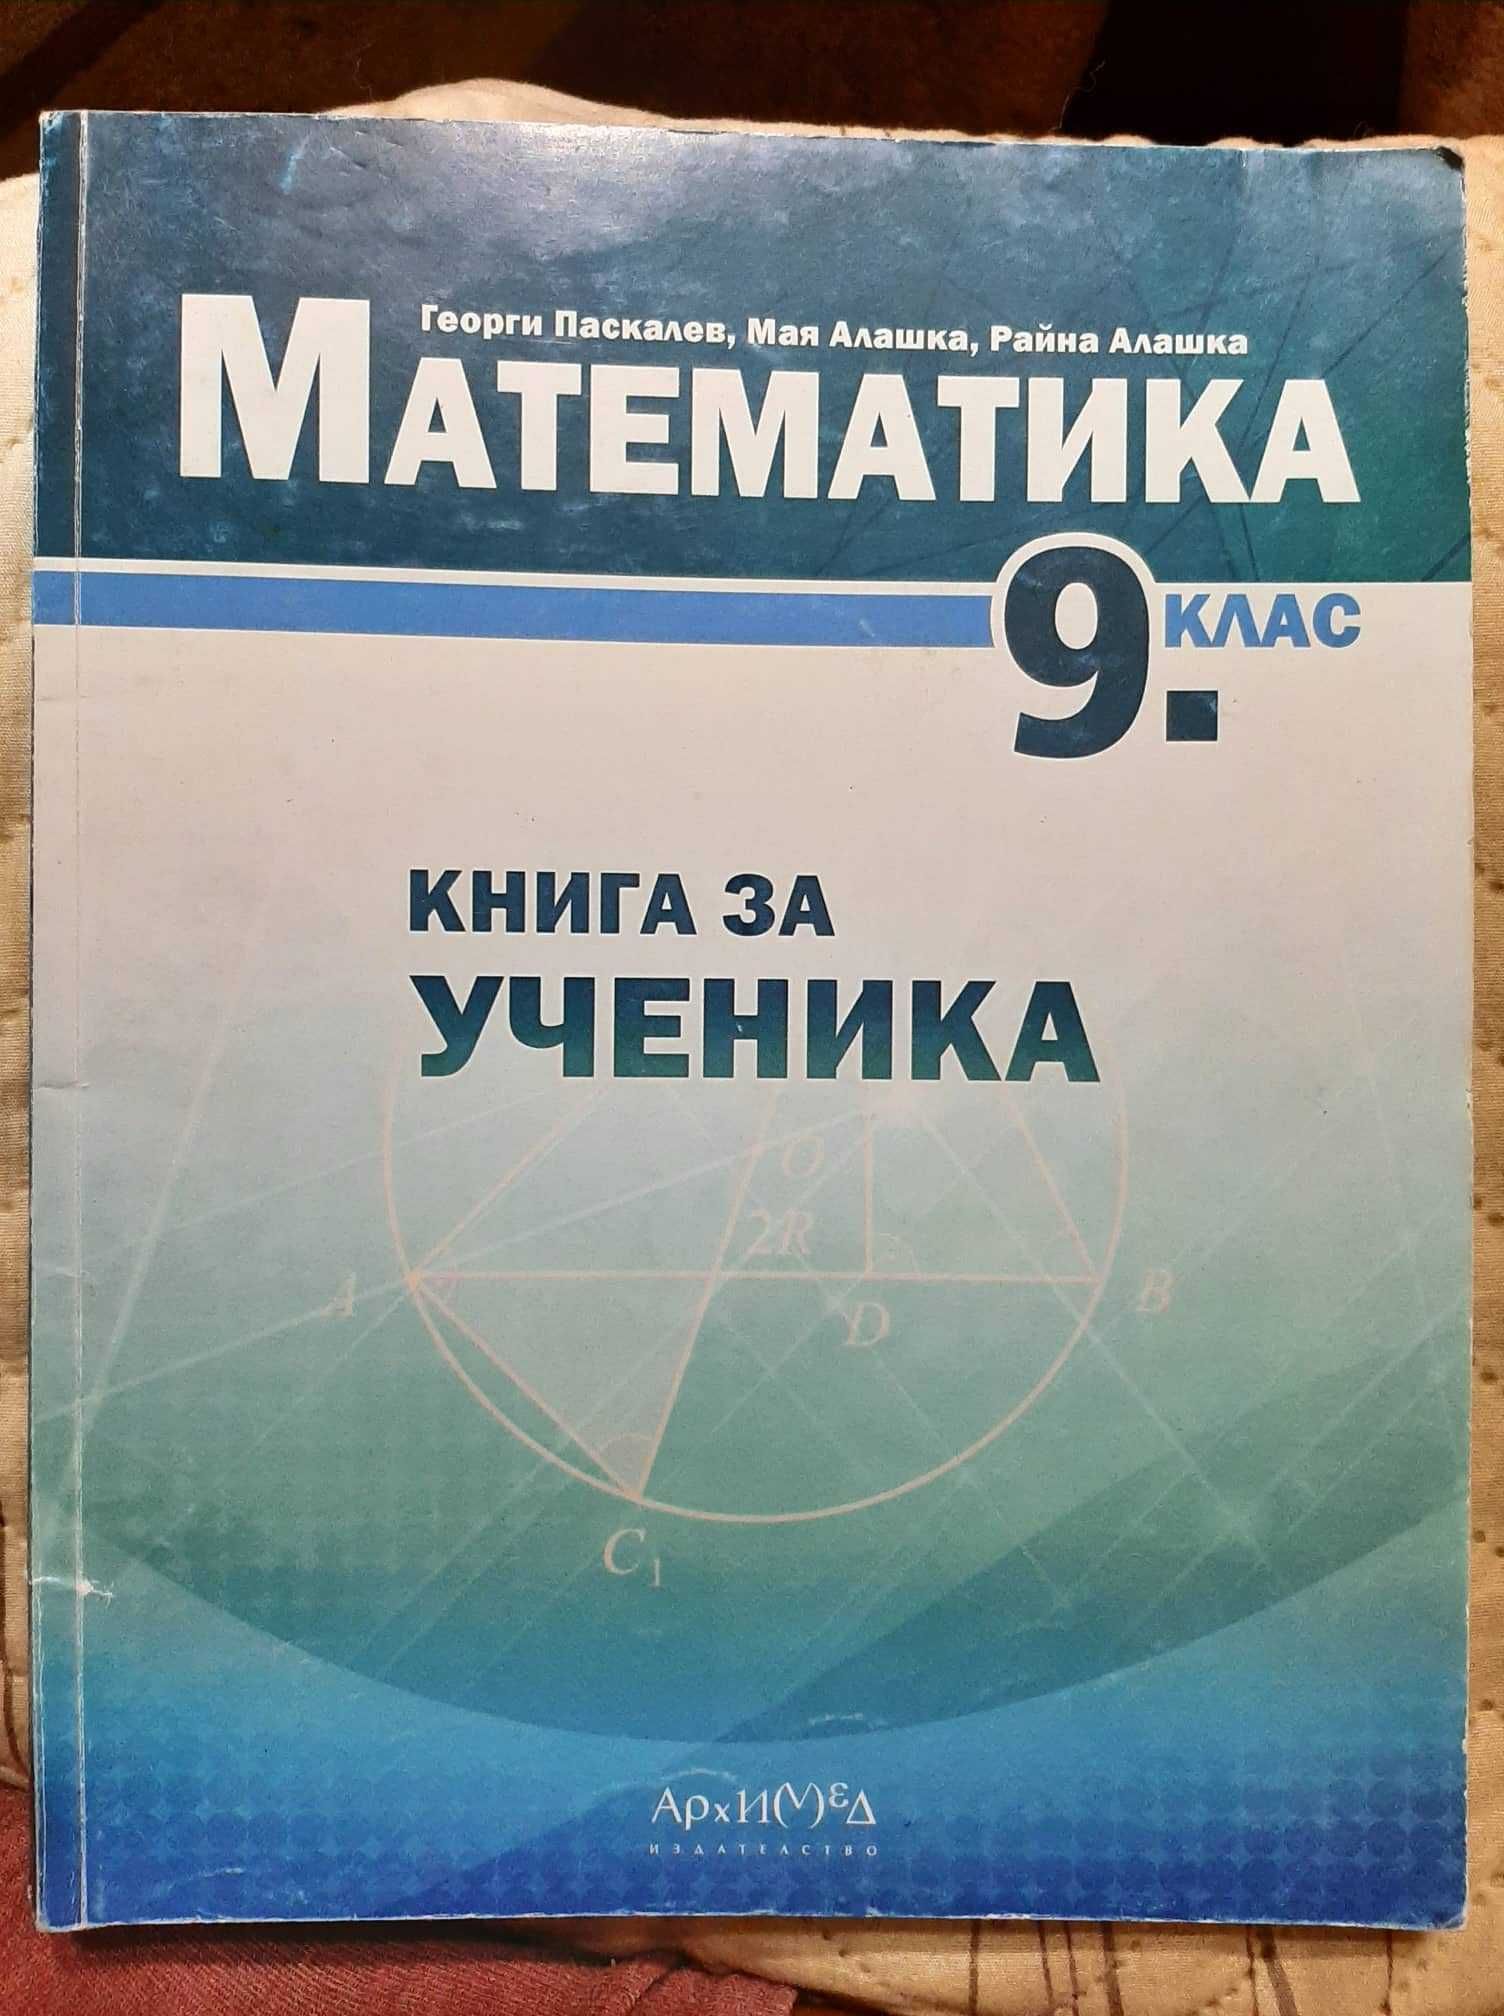 Учебници по Физика  , Химия , История  и Математика за 9 клас